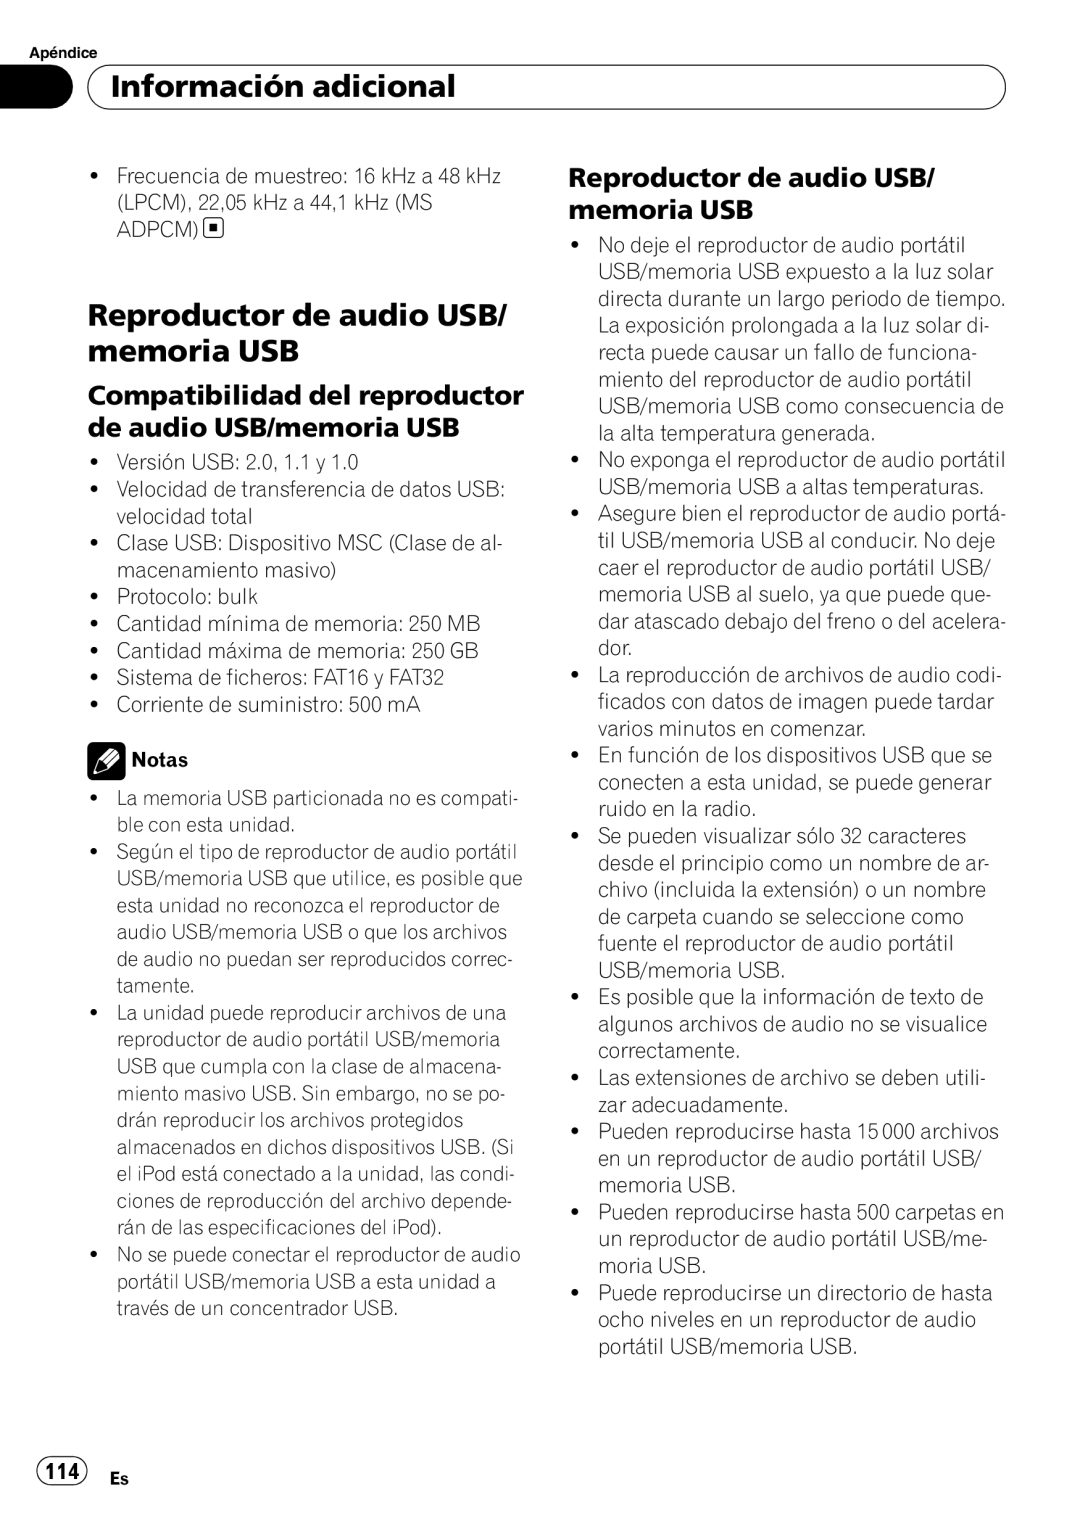 Pioneer DEH-P6000UB operation manual Reproductor de audio USB/ memoria USB, 114 Es, Información adicional 